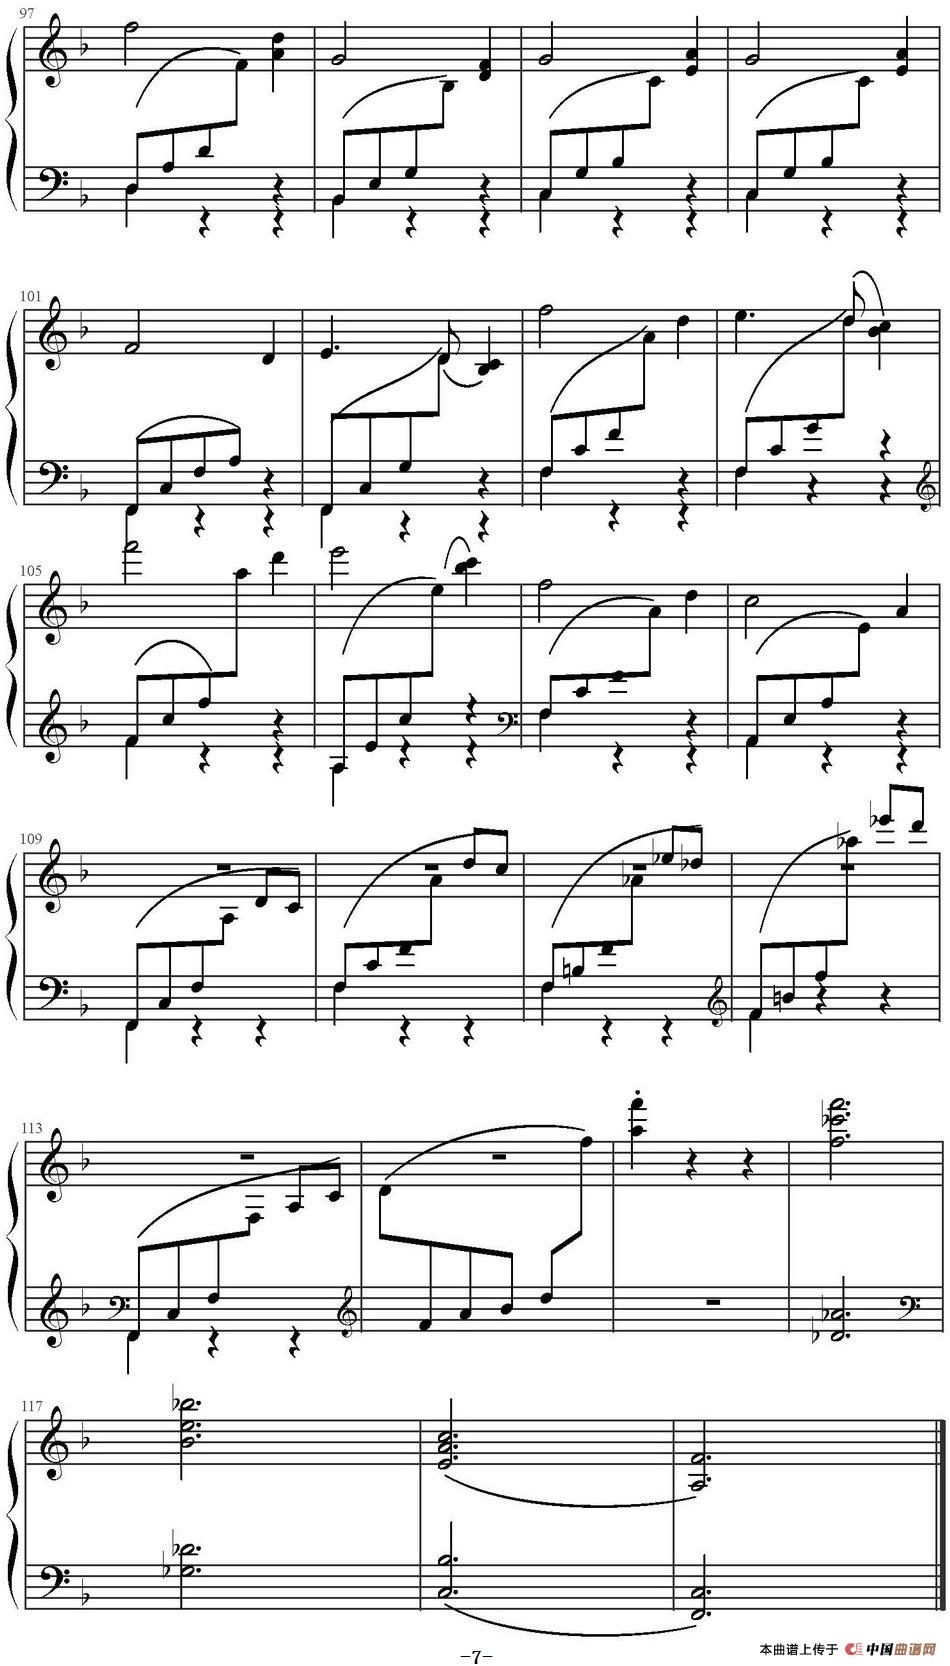 《风格练习曲》钢琴曲谱图分享